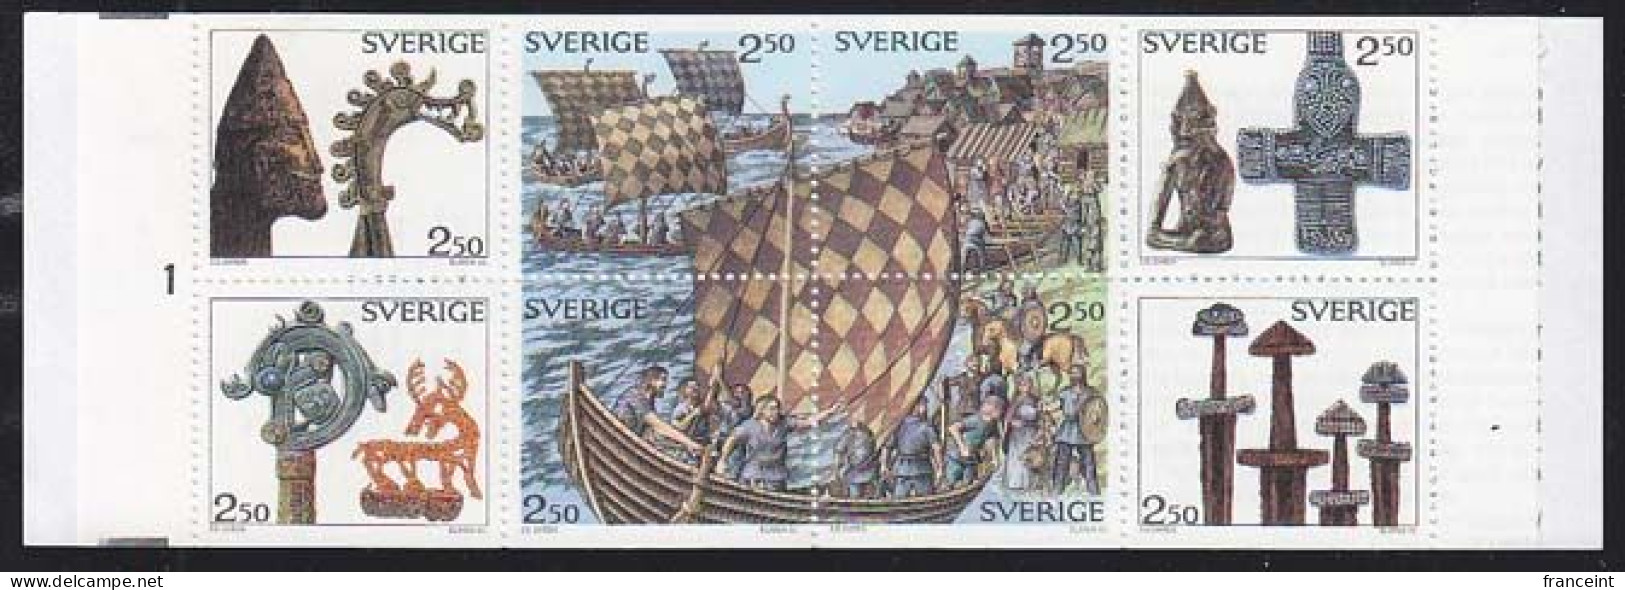 SWEDEN(1990) Vikings. Ship. Booklet Of 8 Stamps. Scott No 1808a. - Blocks & Sheetlets